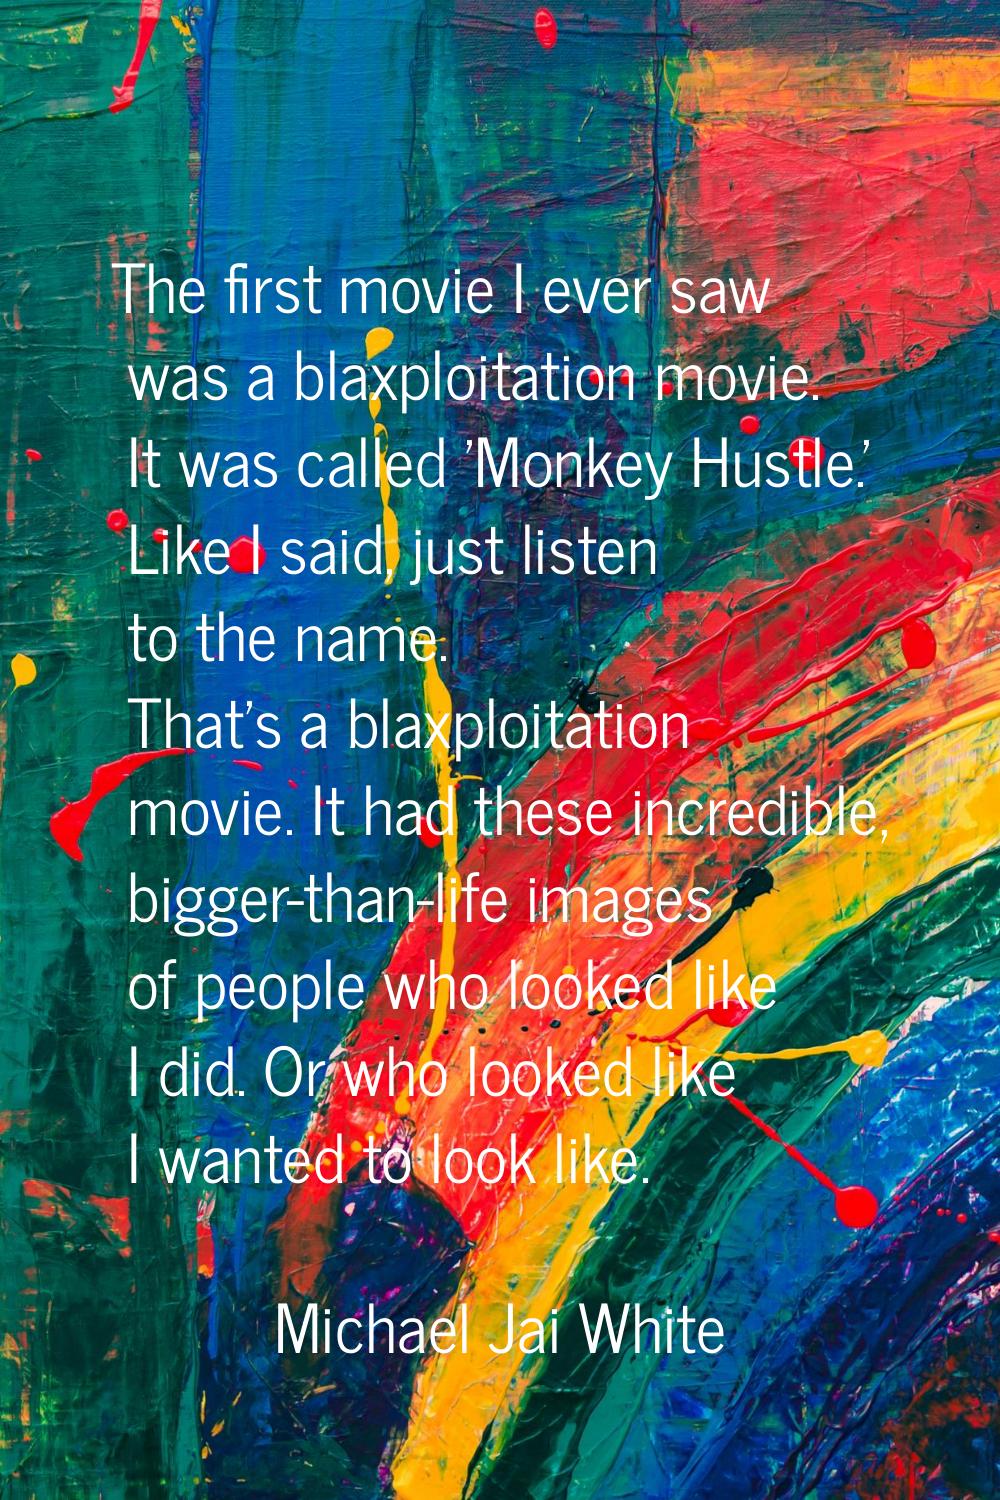 The first movie I ever saw was a blaxploitation movie. It was called 'Monkey Hustle.' Like I said, 